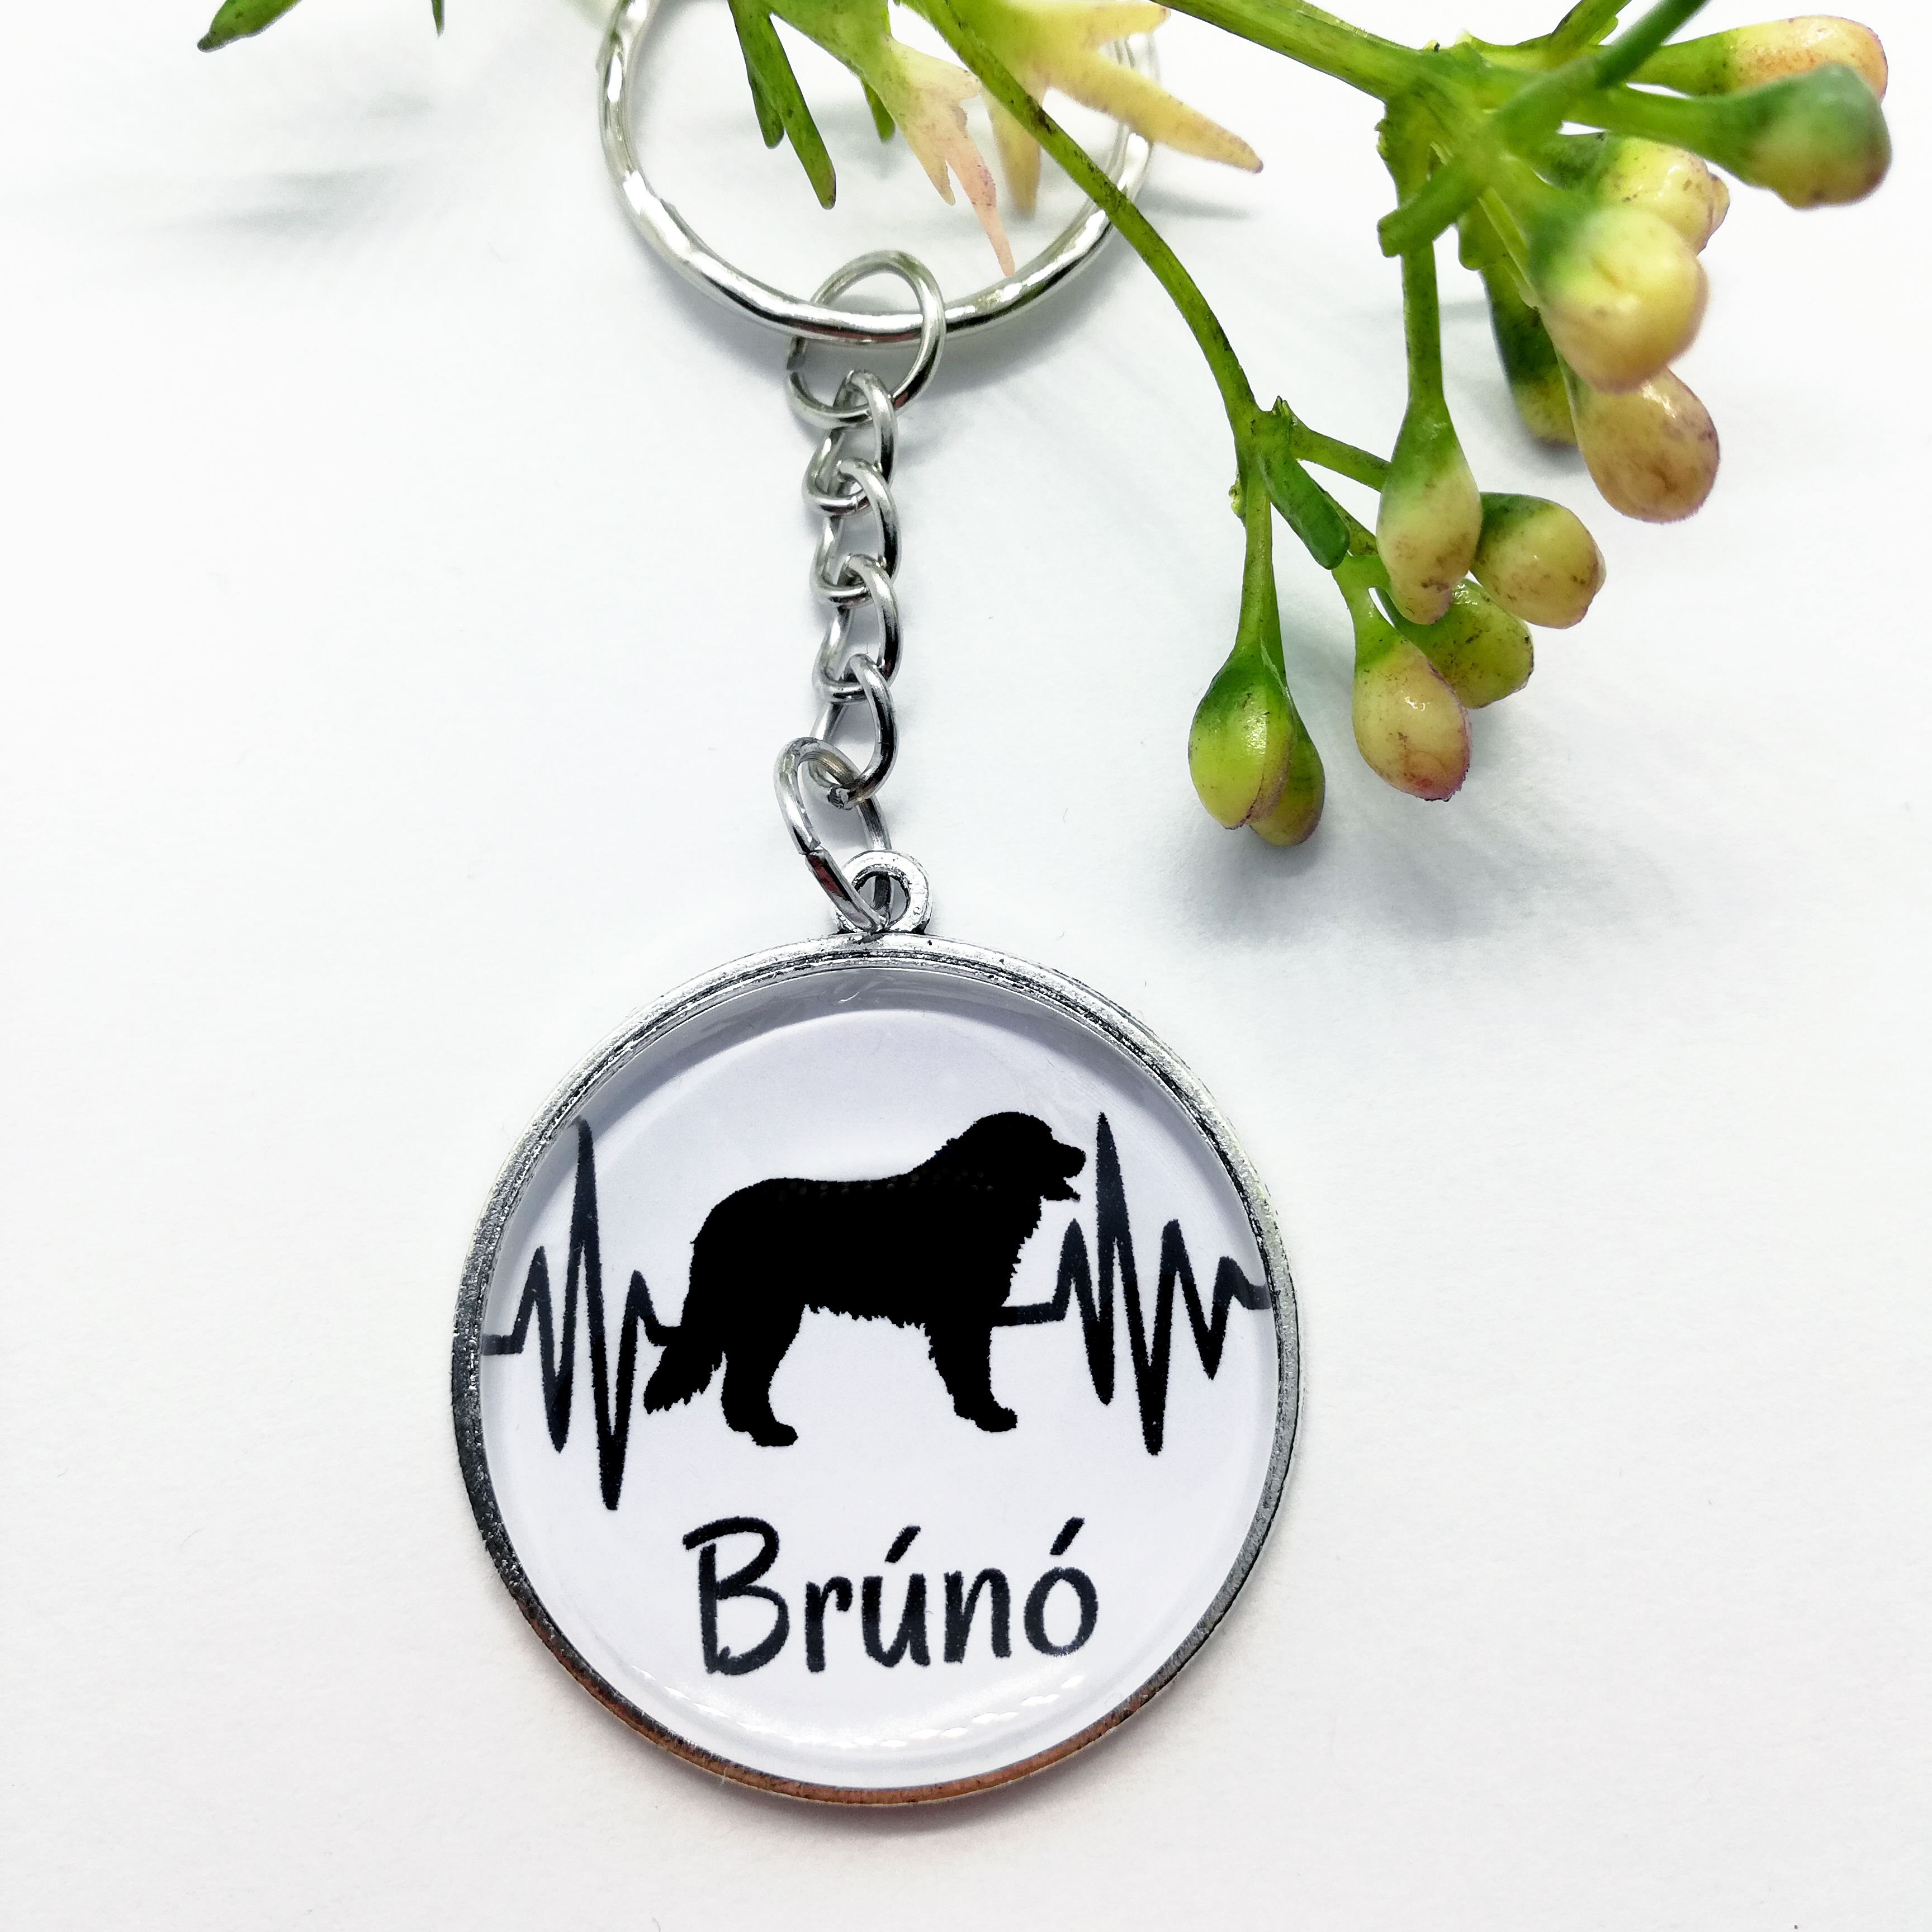 Kutyás kulcstartó saját kutyusod nevével - Berni pásztor